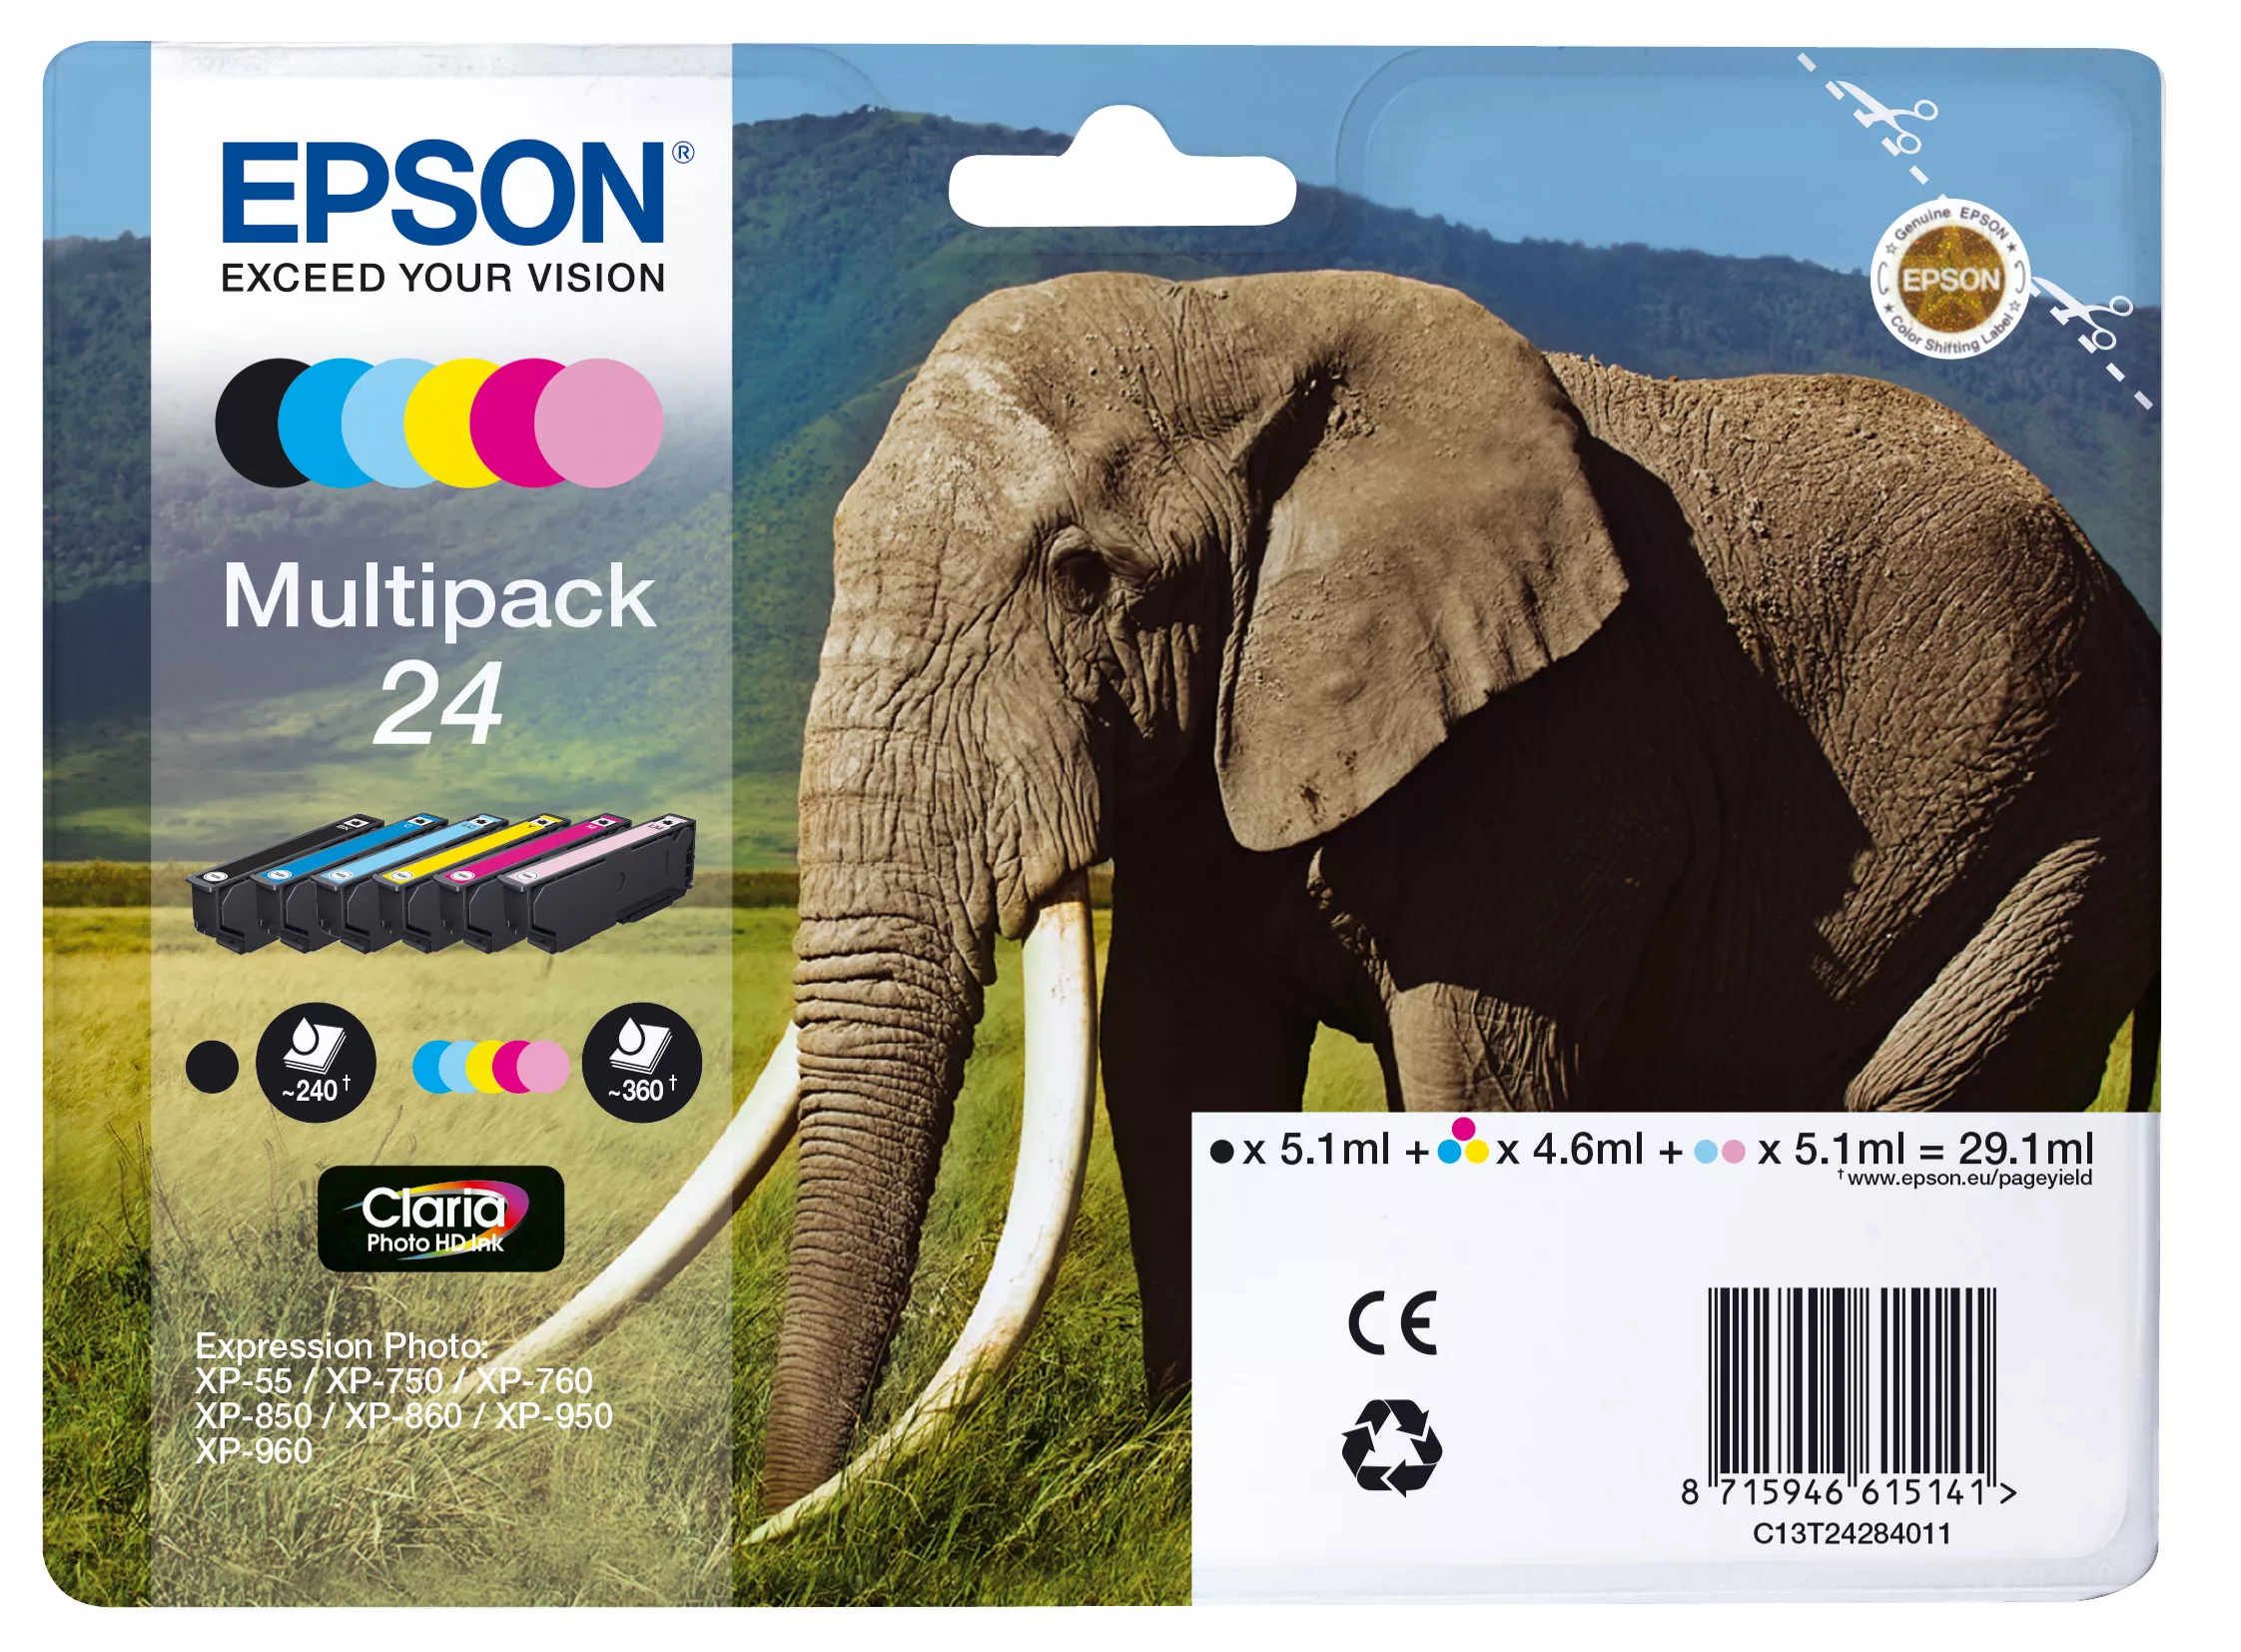 Vente EPSON 24 cartouche d encre noire et cinq couleurs capacité au meilleur prix